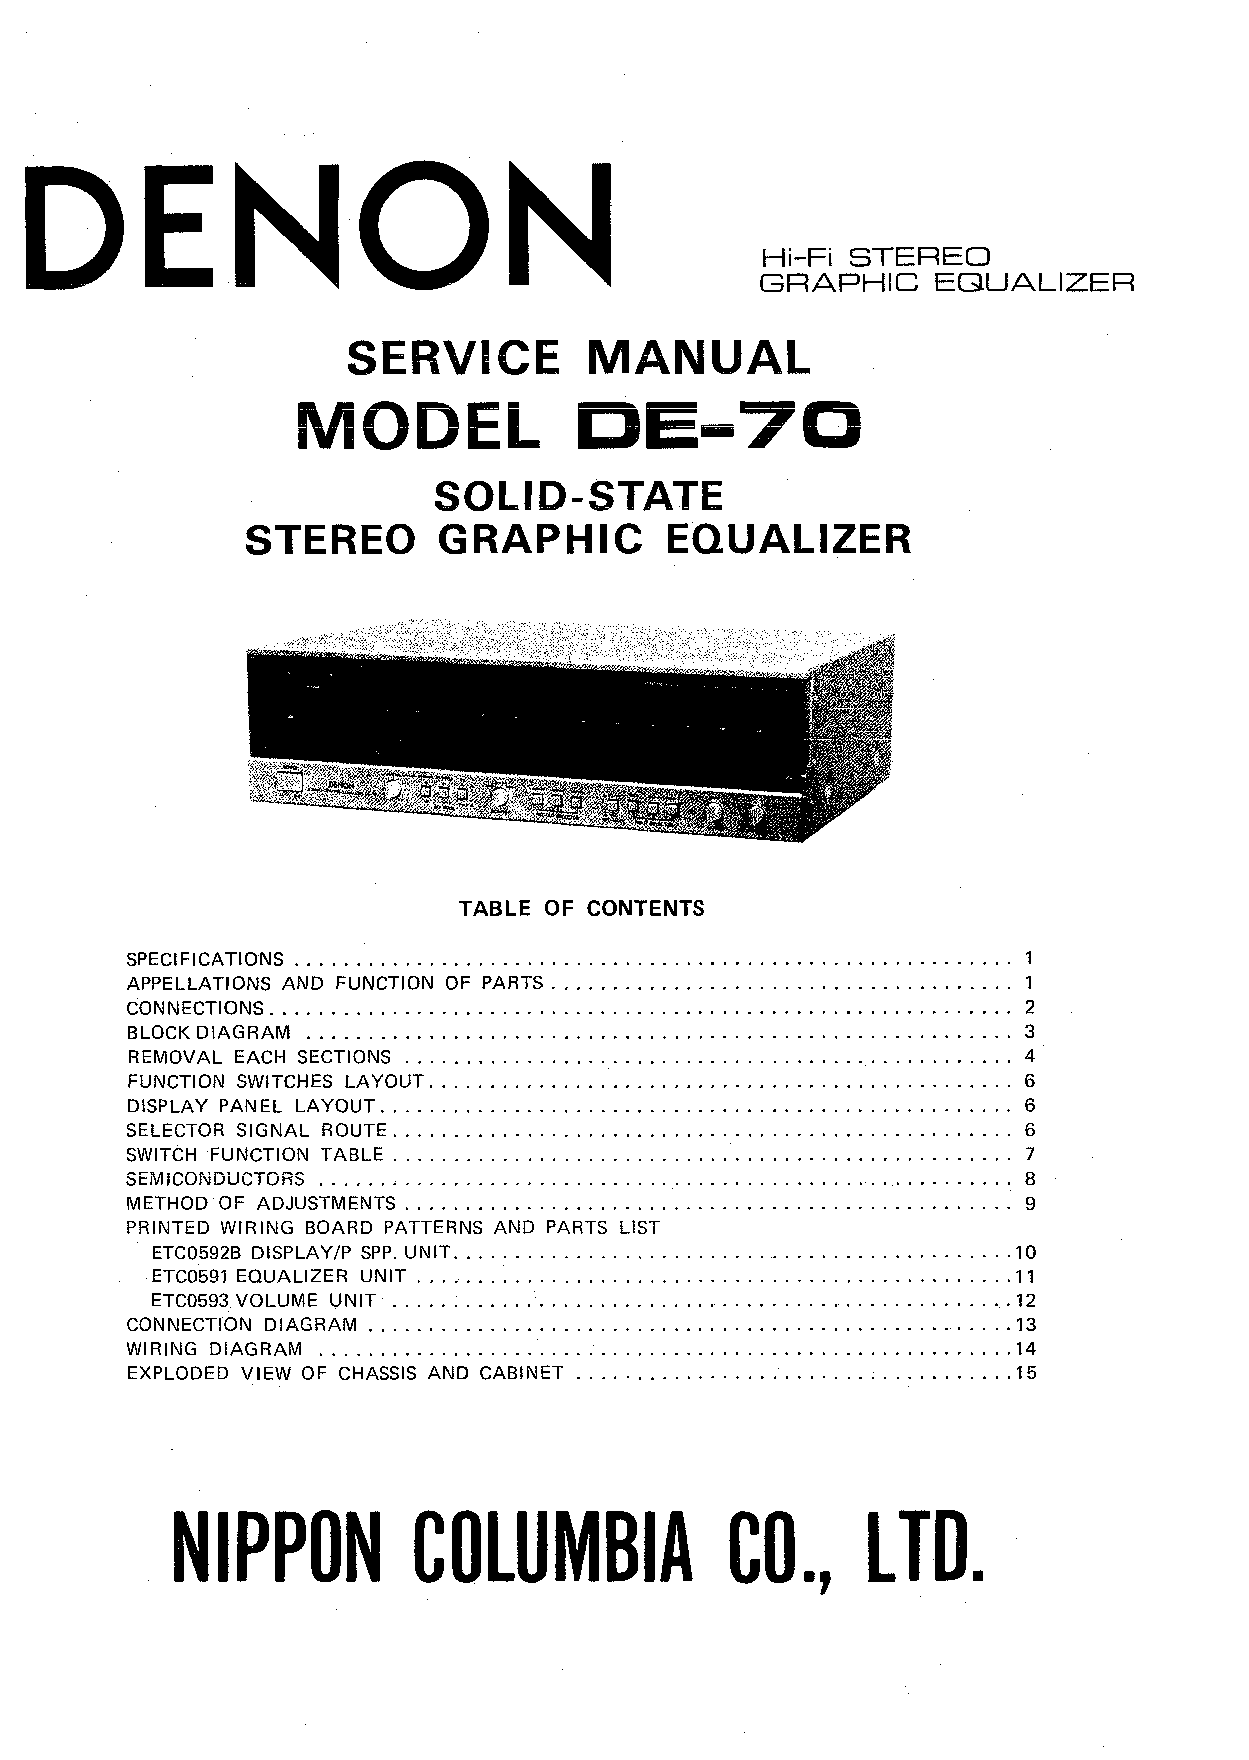 Denon DE-70 Service Manual